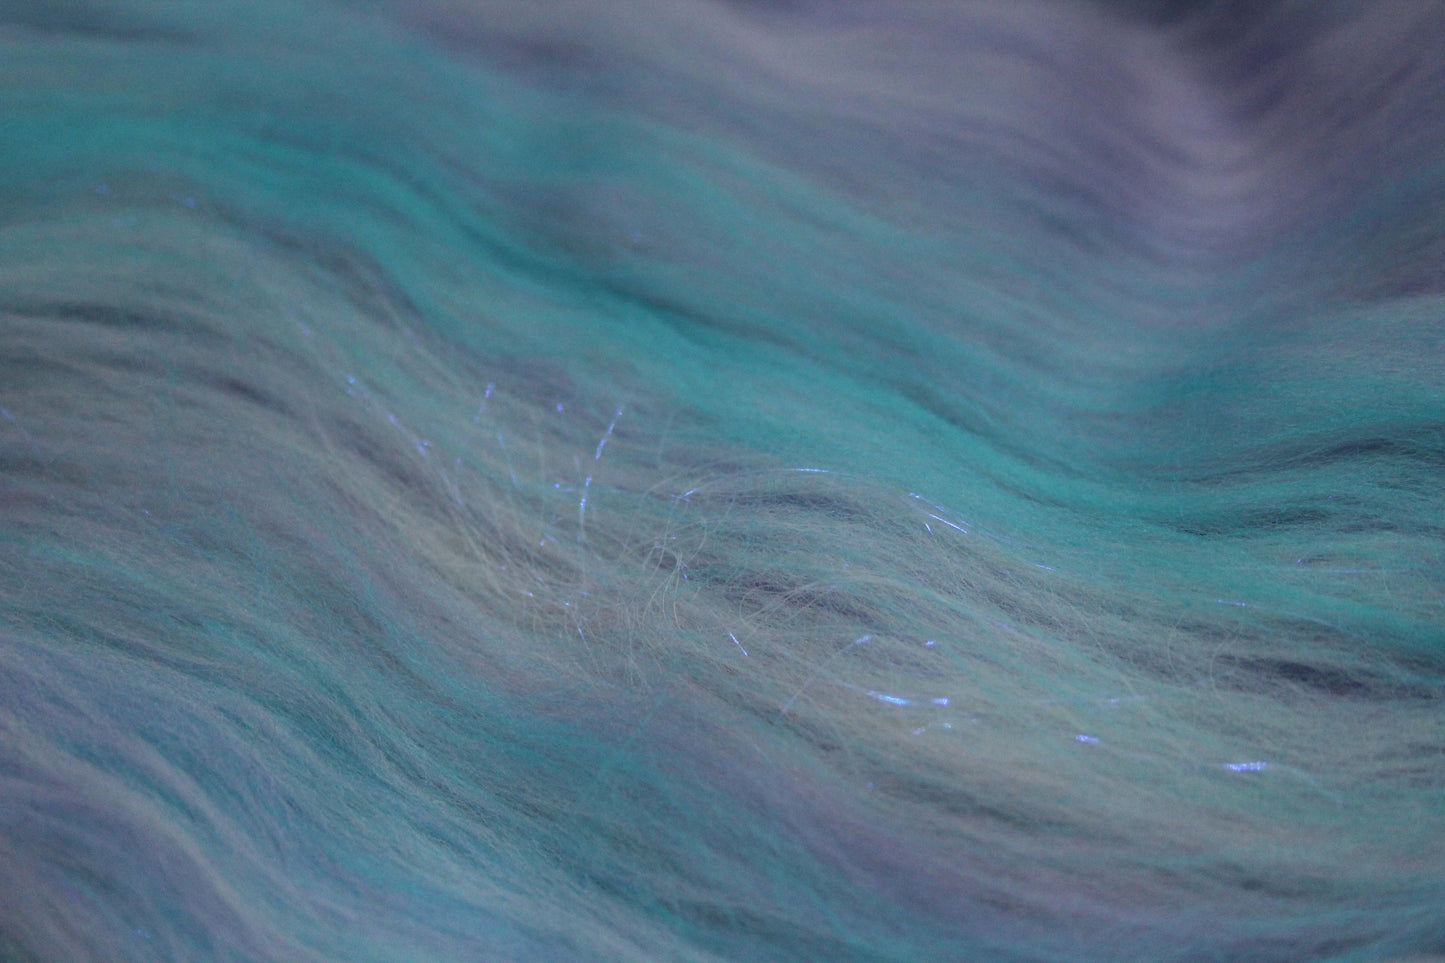 Merino Art Batt  -  Purple Turquoise Pink - 114 grams 4 oz - Wool for felting, spinning and weaving